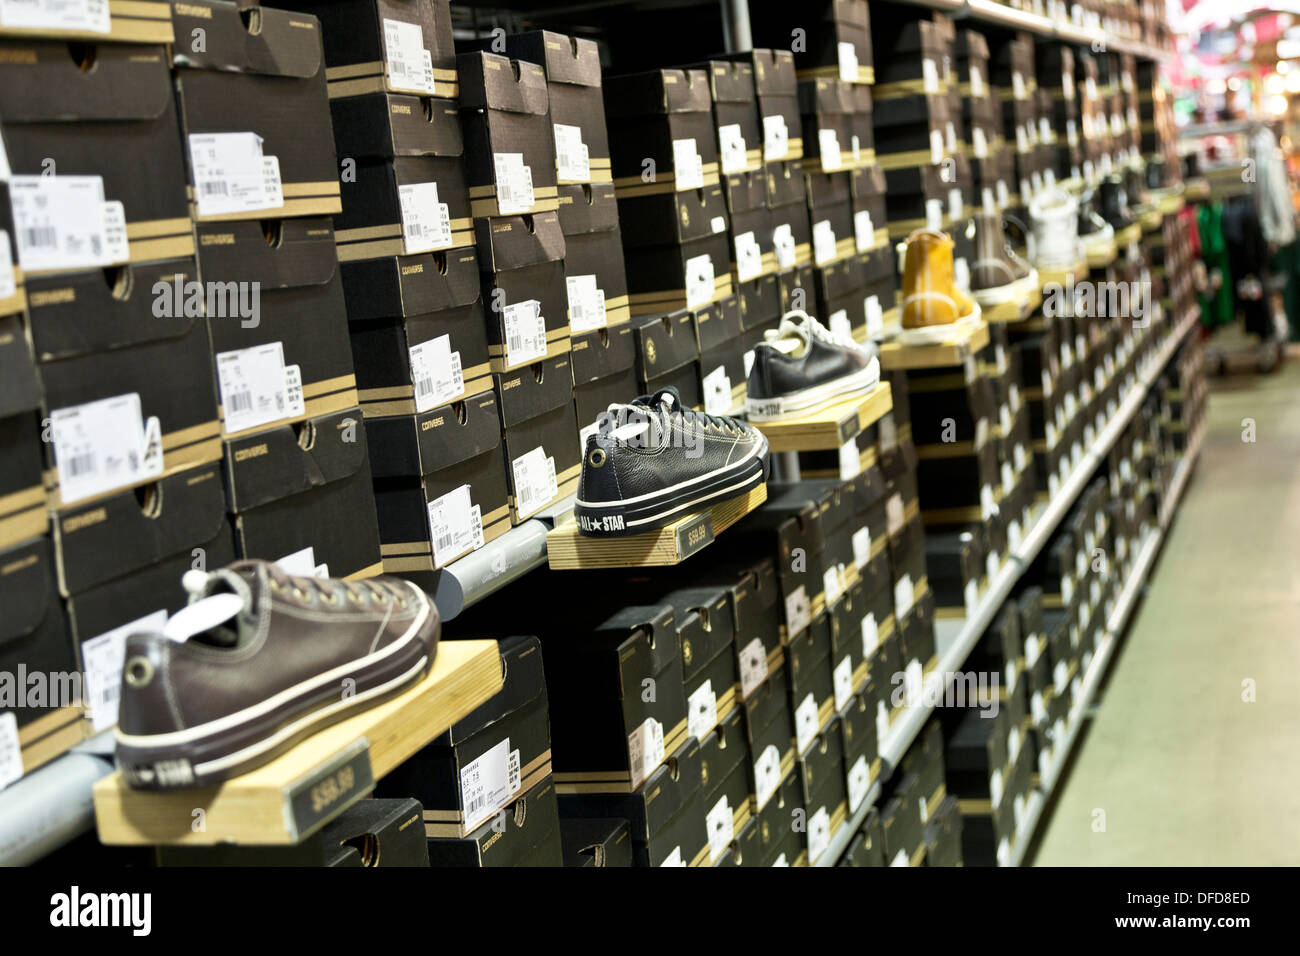 Chaussures Converse disposés sur les étagères de magasin de chaussures Converse, Great Mall, Milpitas, Californie, USA Banque D'Images